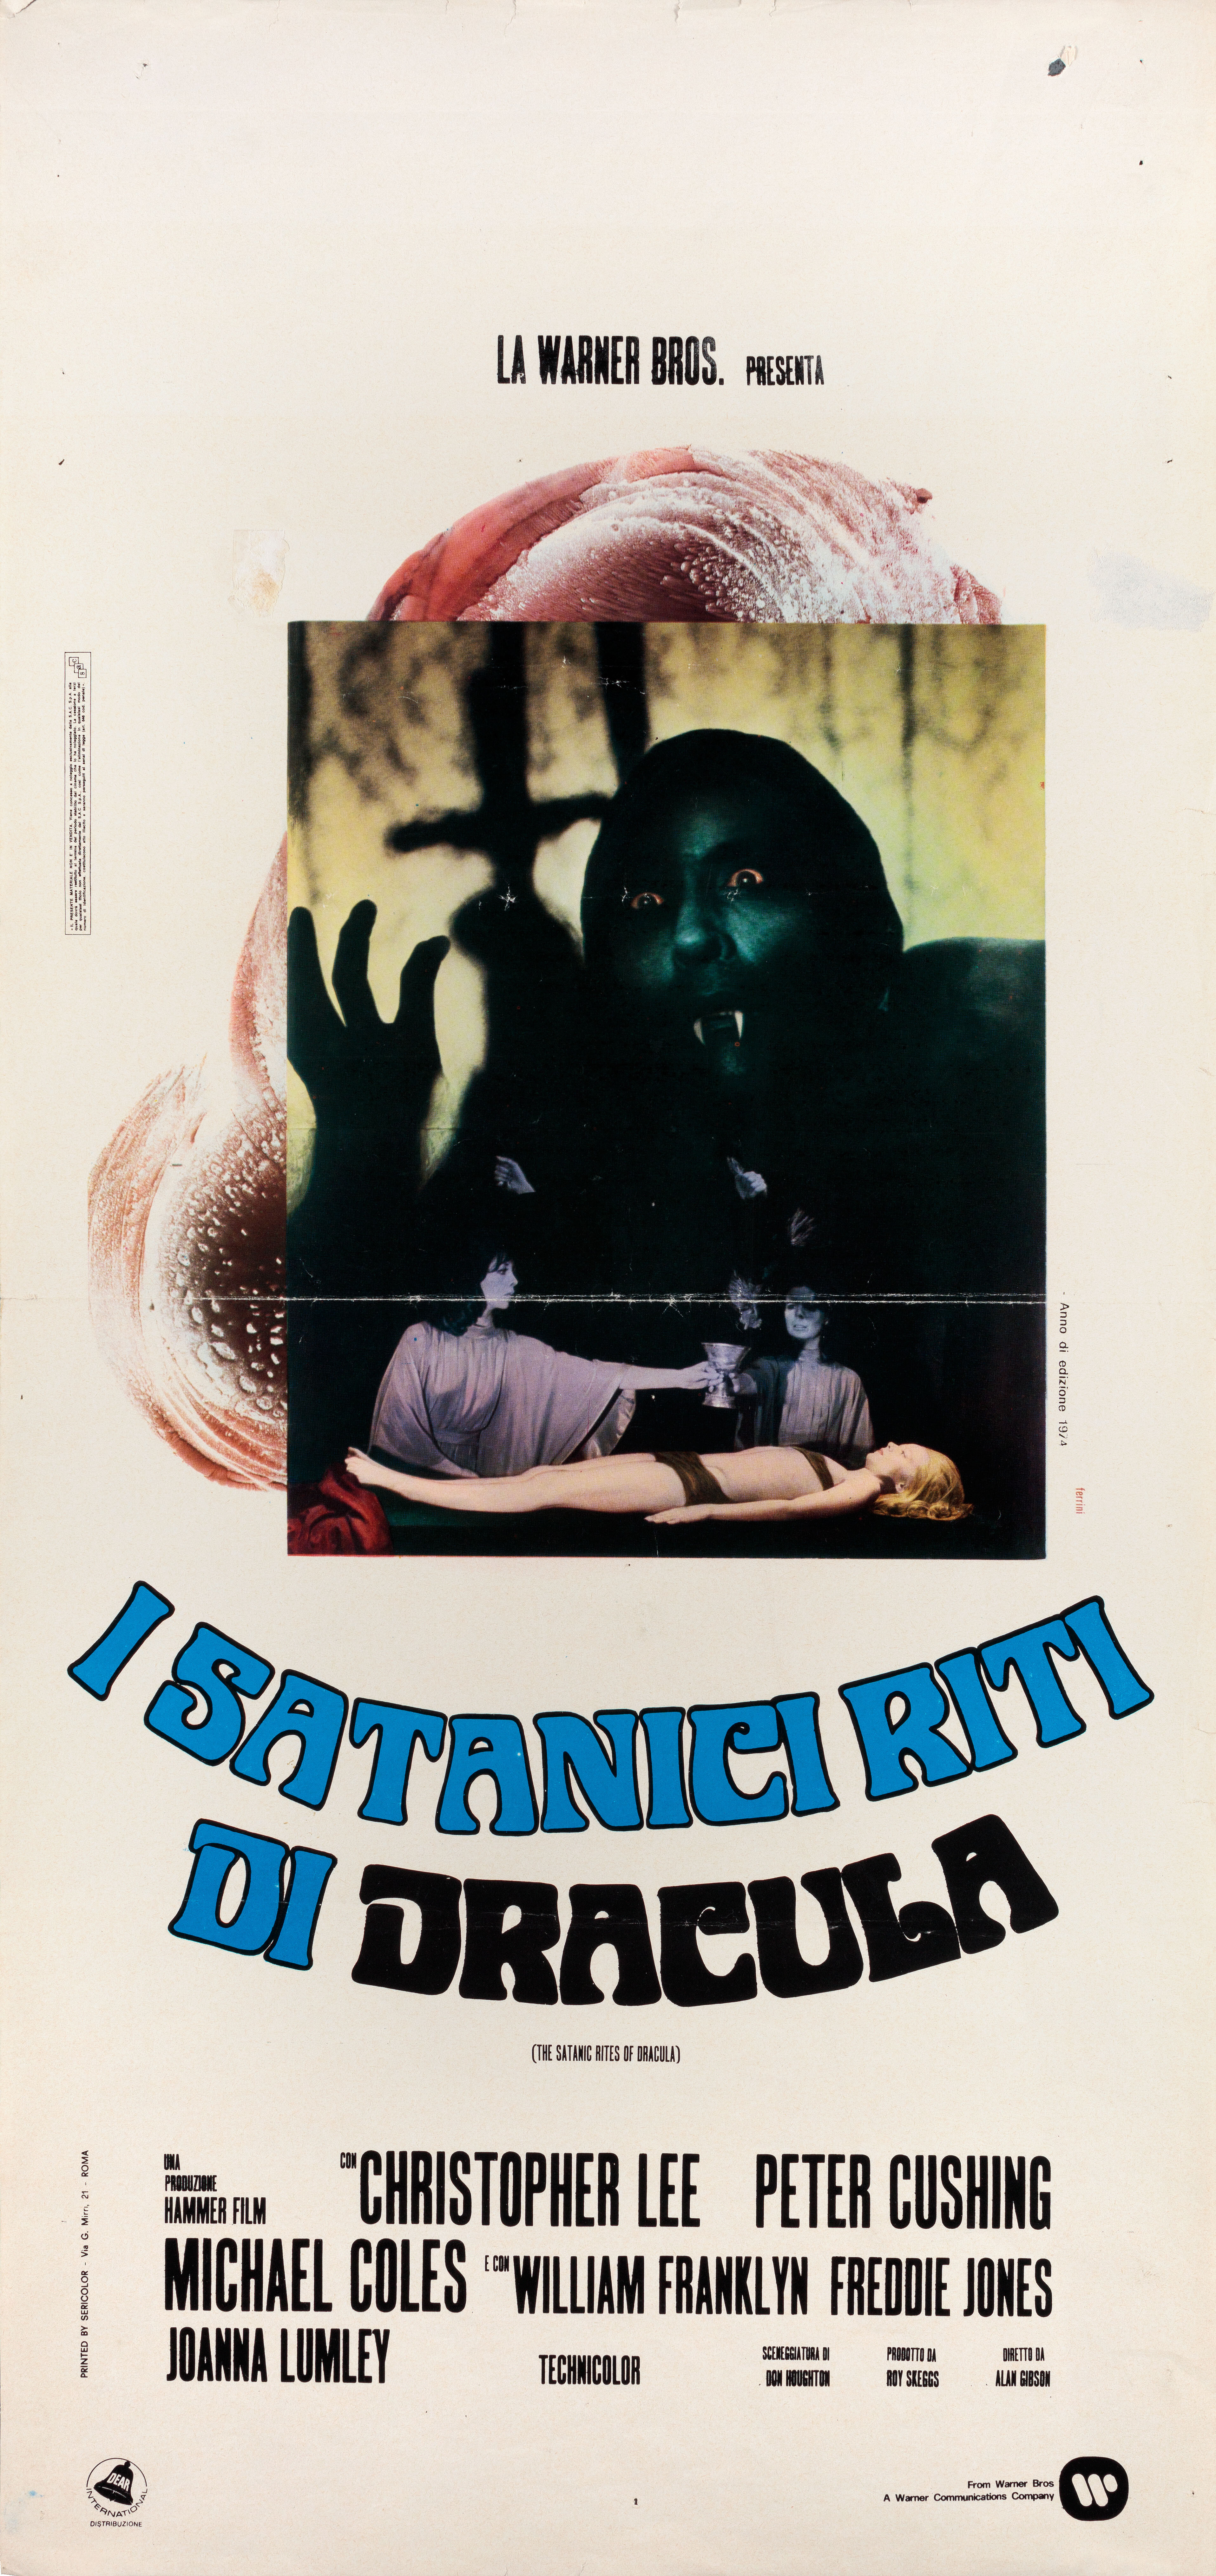 Сатанинские обряды Дракулы (The Satanic Rites of Dracula, 1973), режиссёр Алан Гибсон, итальянский постер к фильму (ужасы, 1974 год)